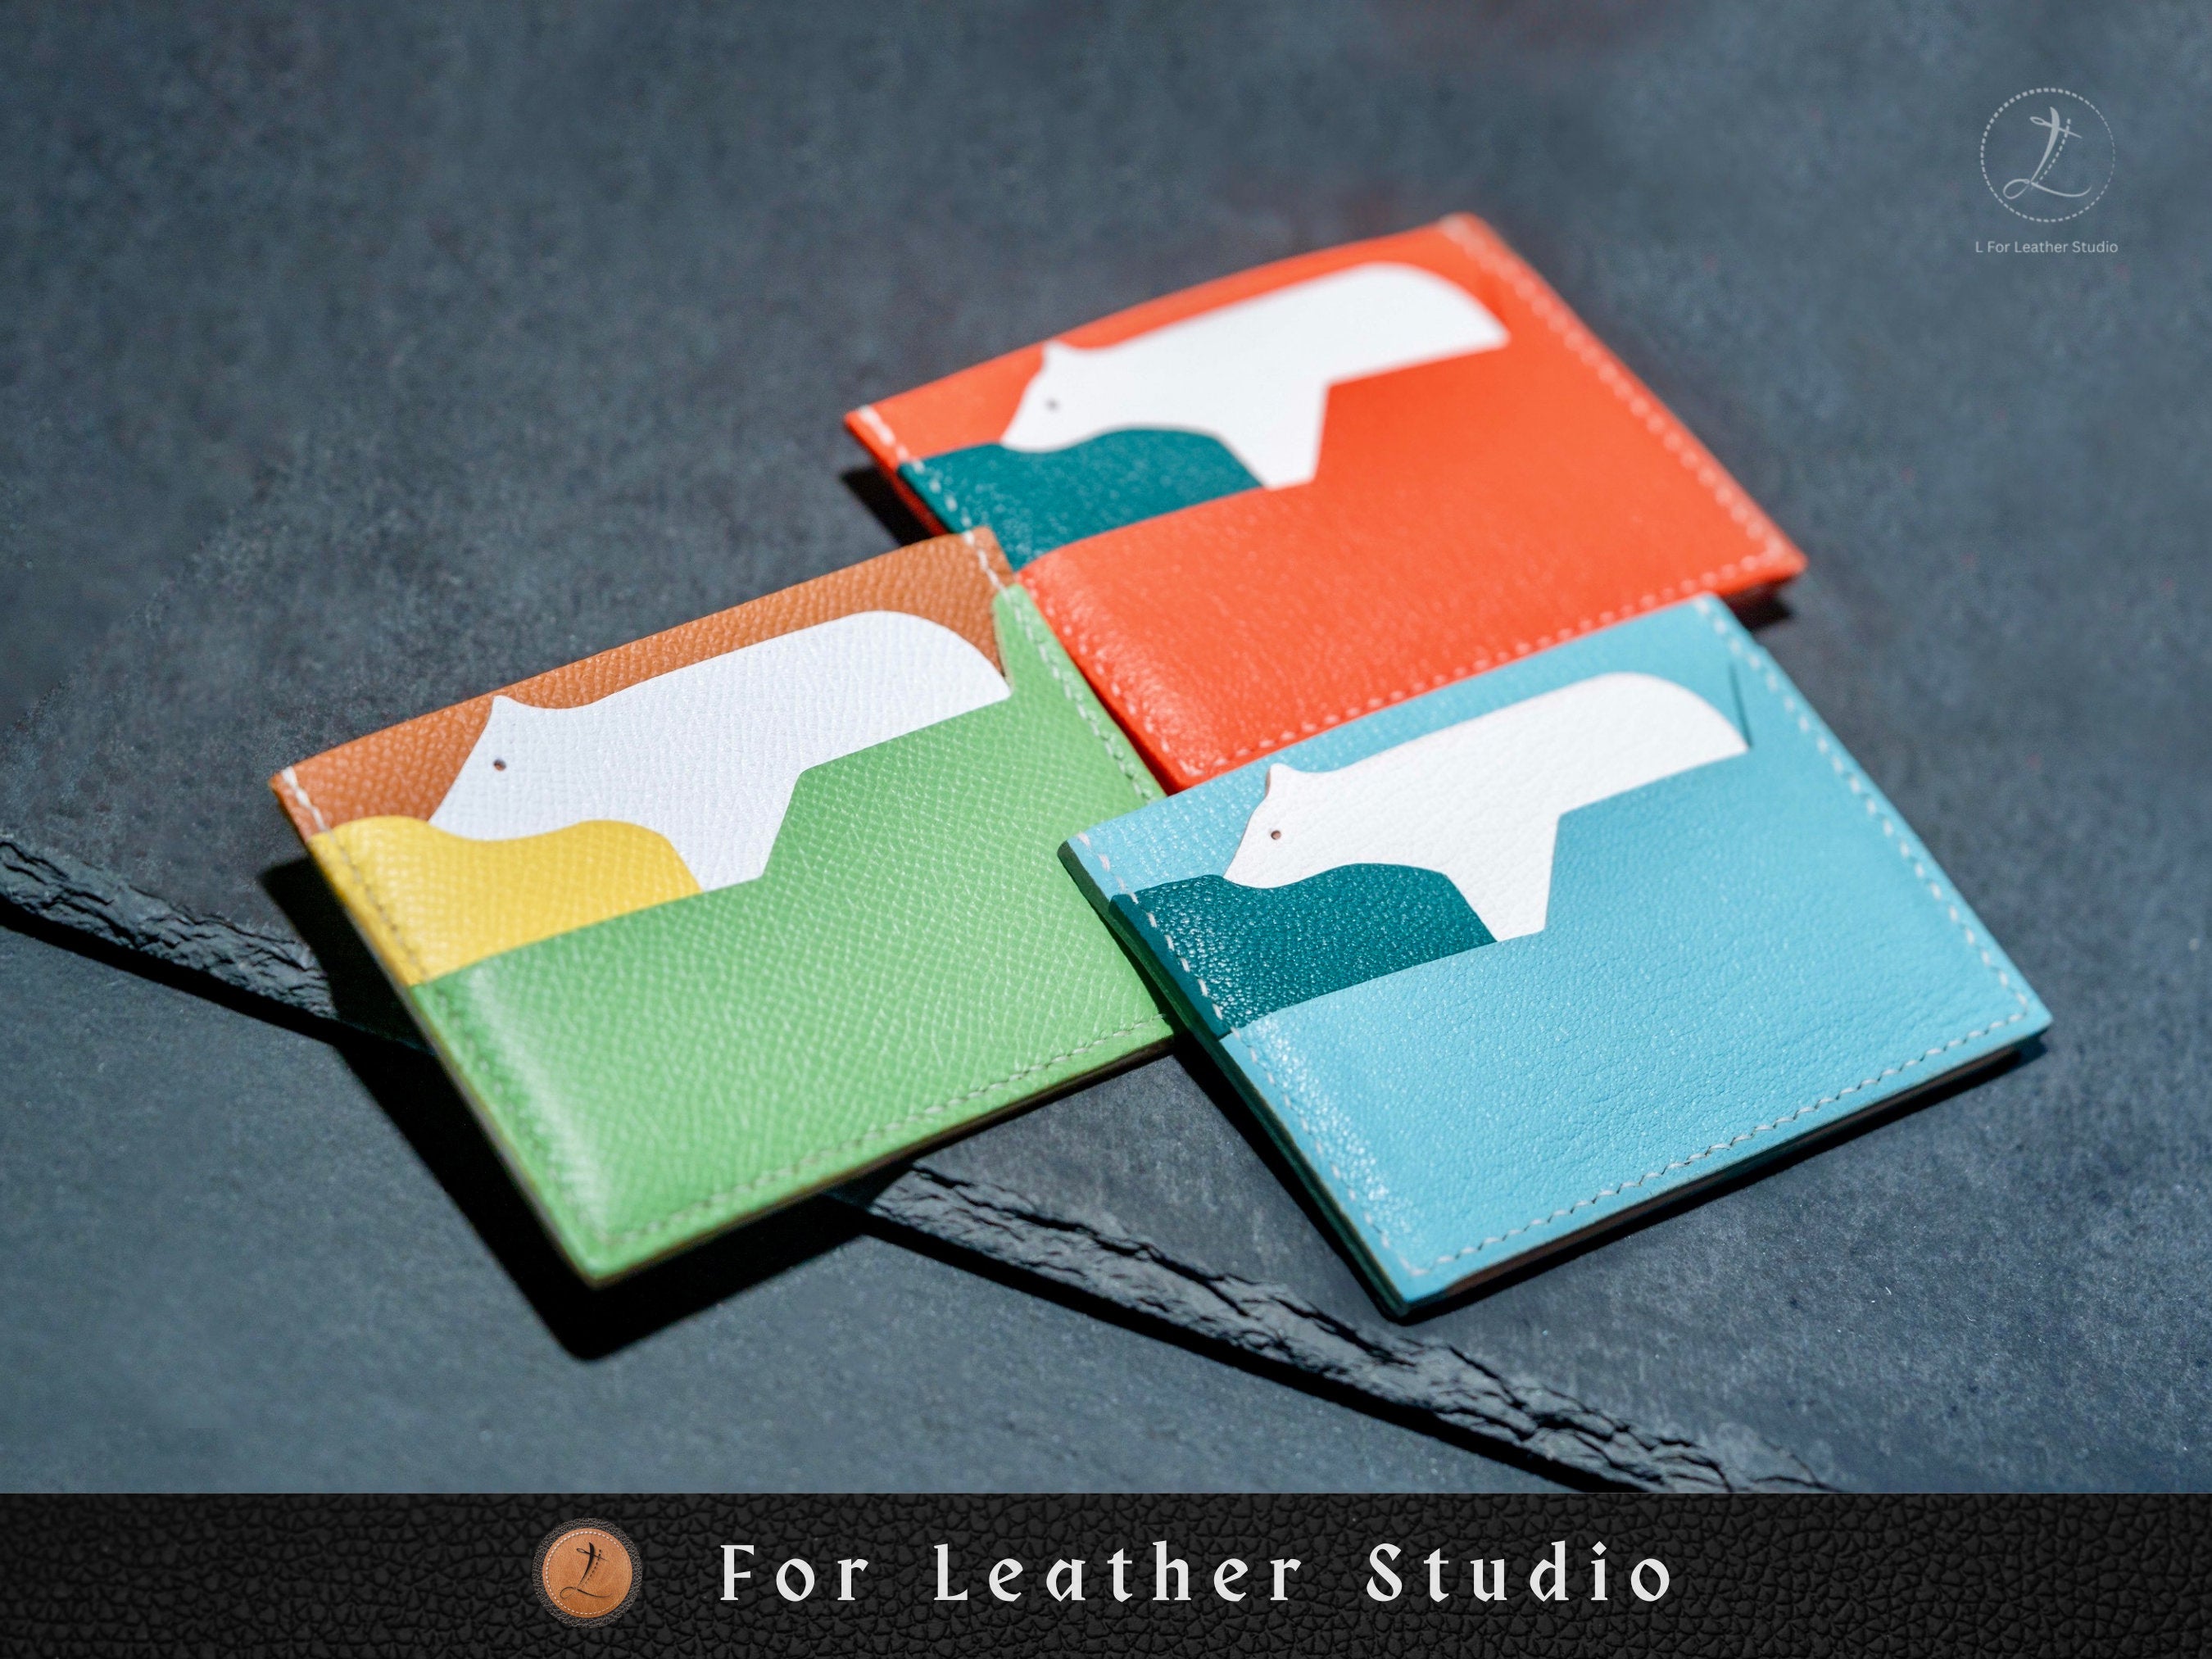 Hermes business card holder  Diy leather bag, Leather craft